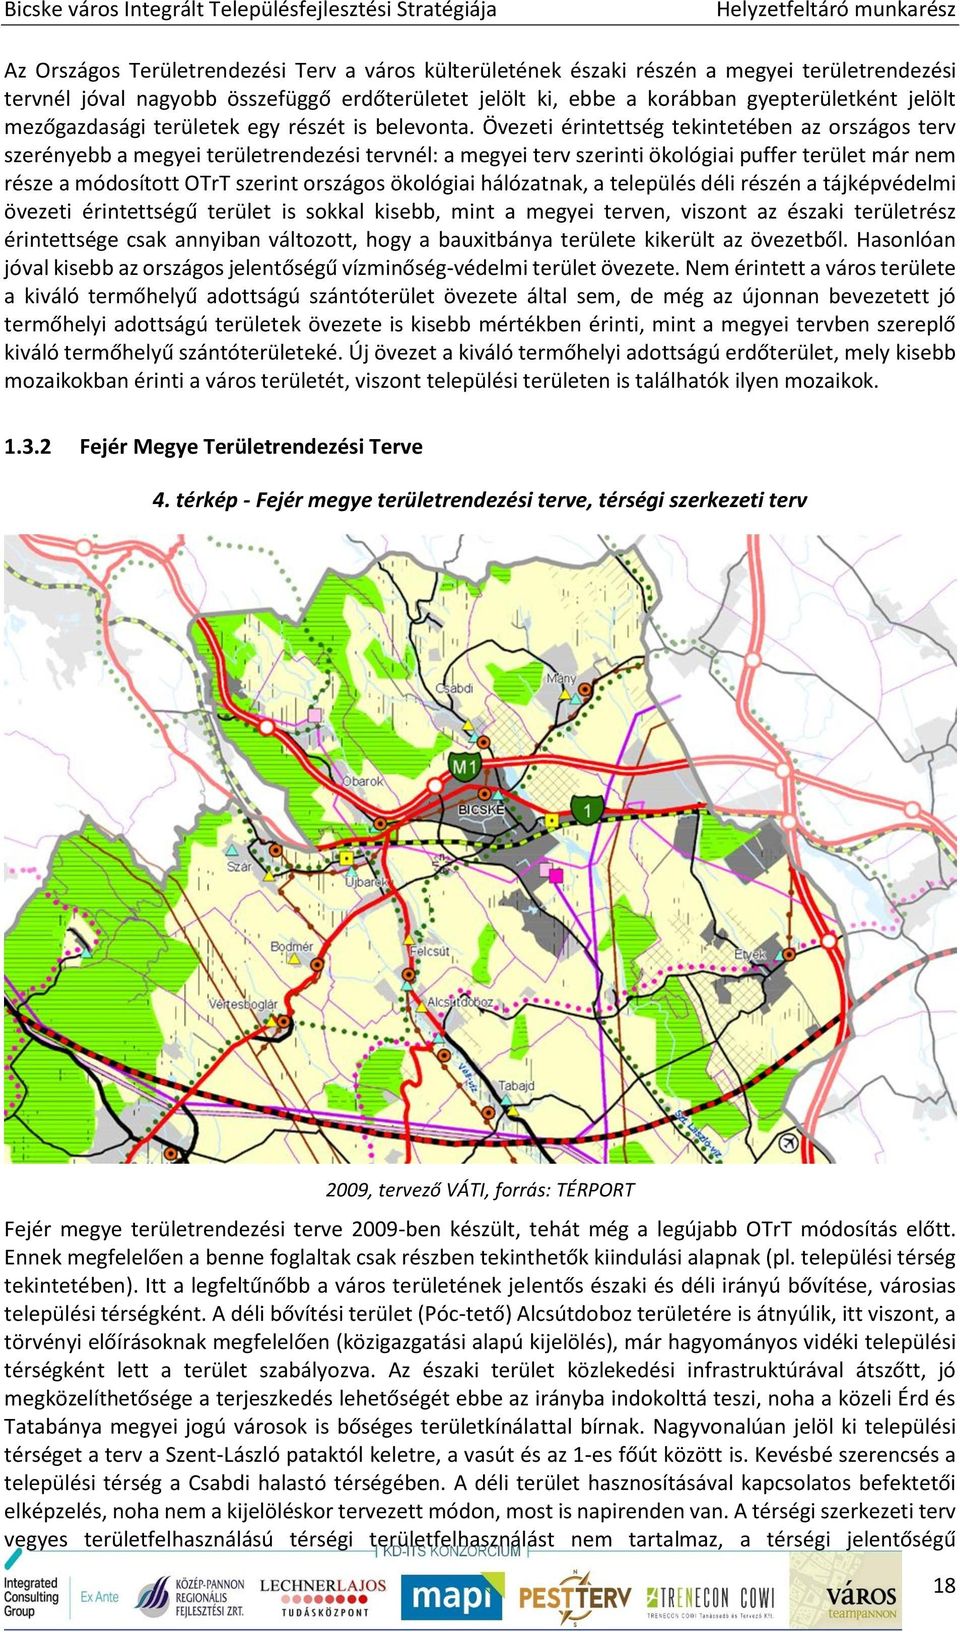 Bicske város integrált településfejlesztési stratégiája - PDF Free Download